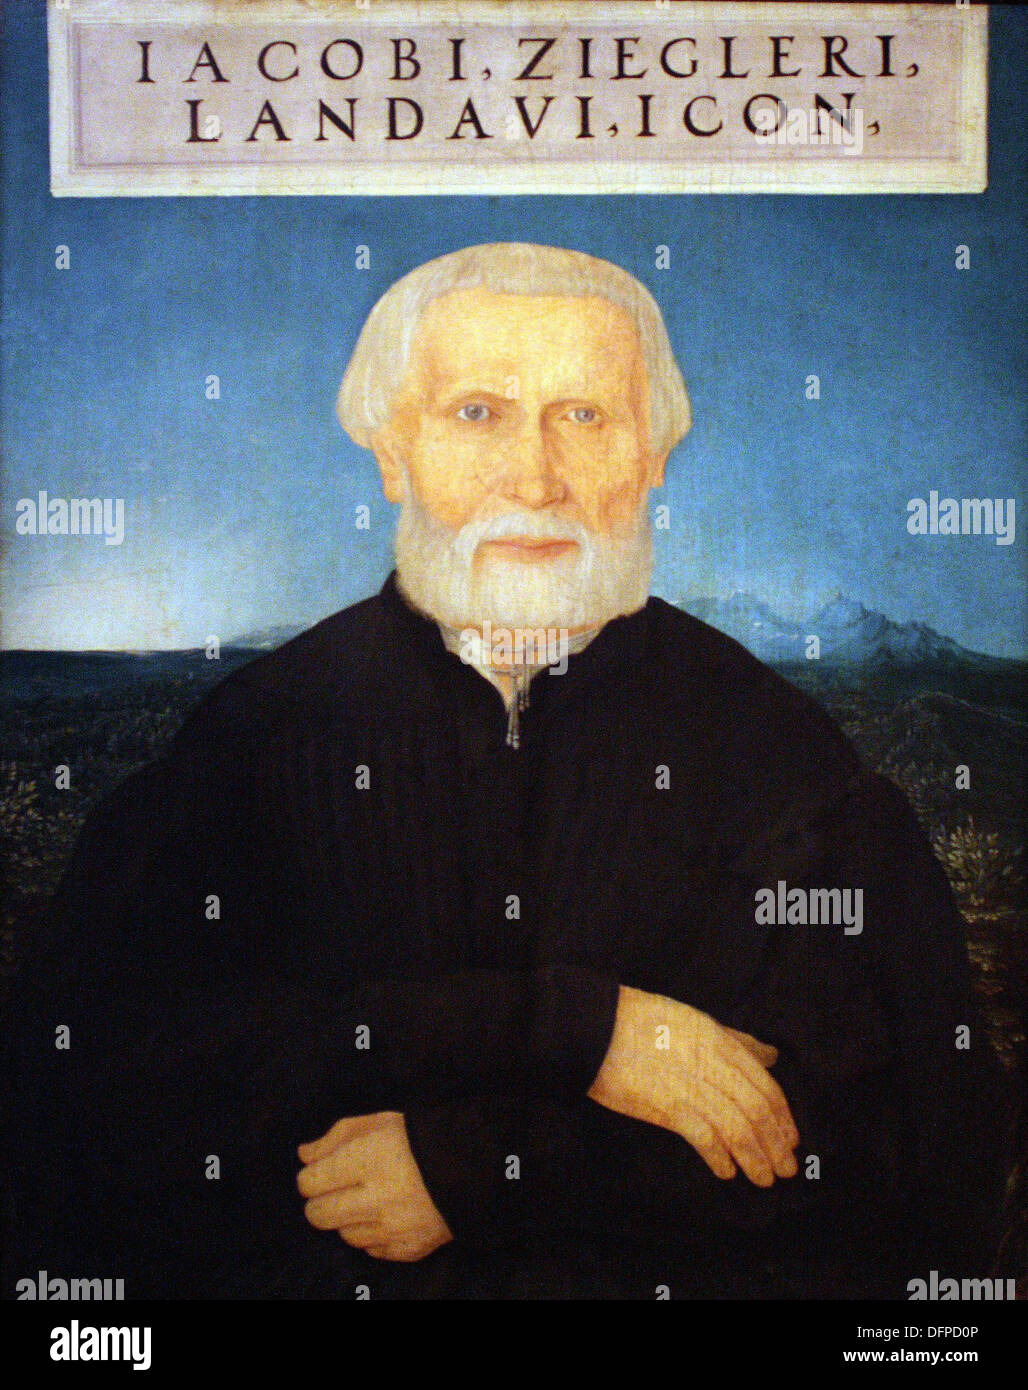 Wolf HUBER - Der umanista Jacob Ziegler - 1549 - Kunsthistoriches Museum - Vienna Foto Stock